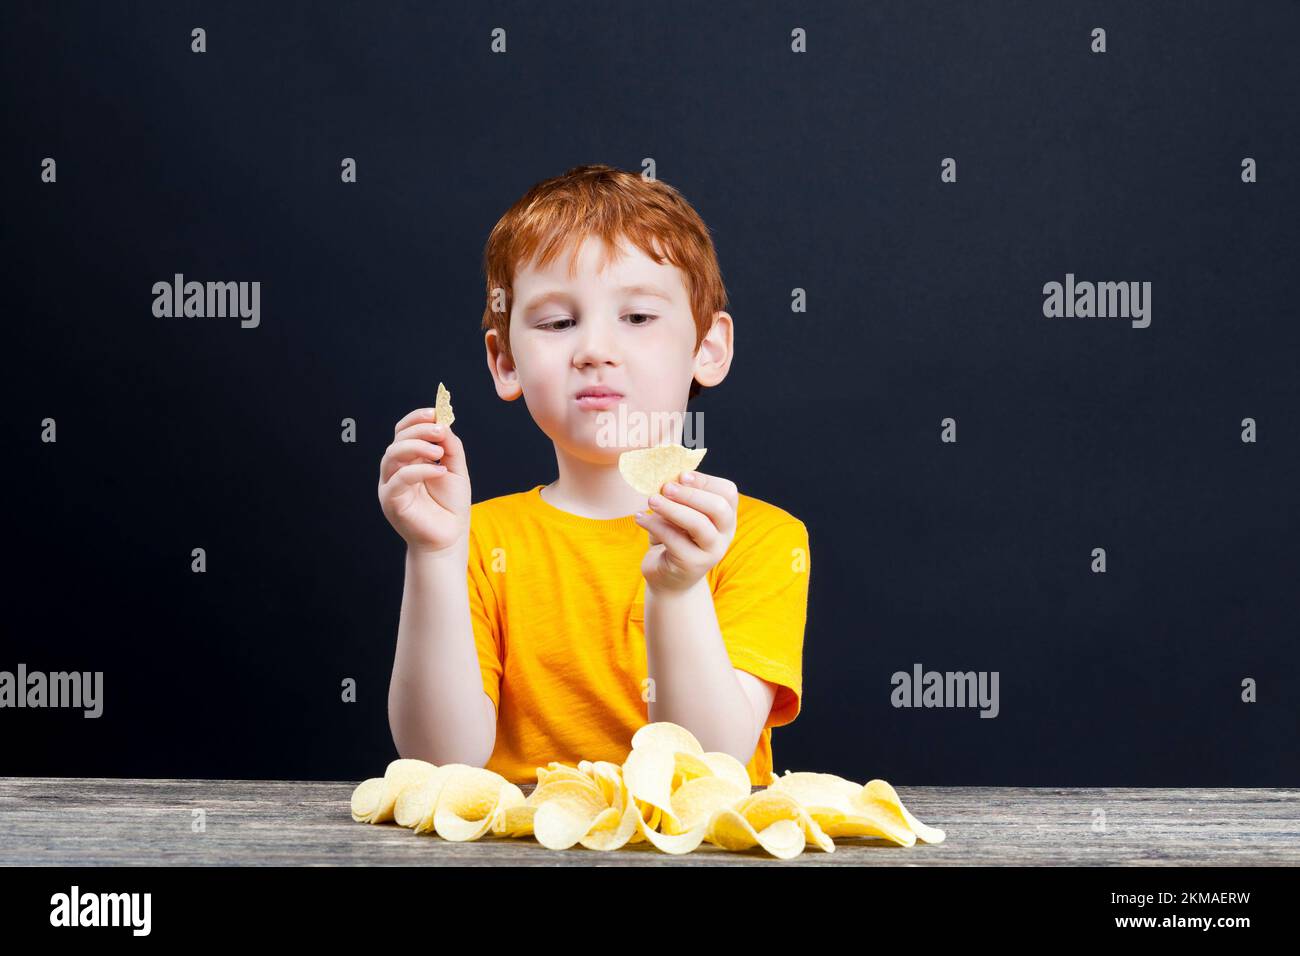 patatine croccanti deliziose che un bambino con i capelli rossi mangia, cibo nocivo, ma che il bambino vuole davvero mangiare, il ragazzo al tavolo, vicino Foto Stock